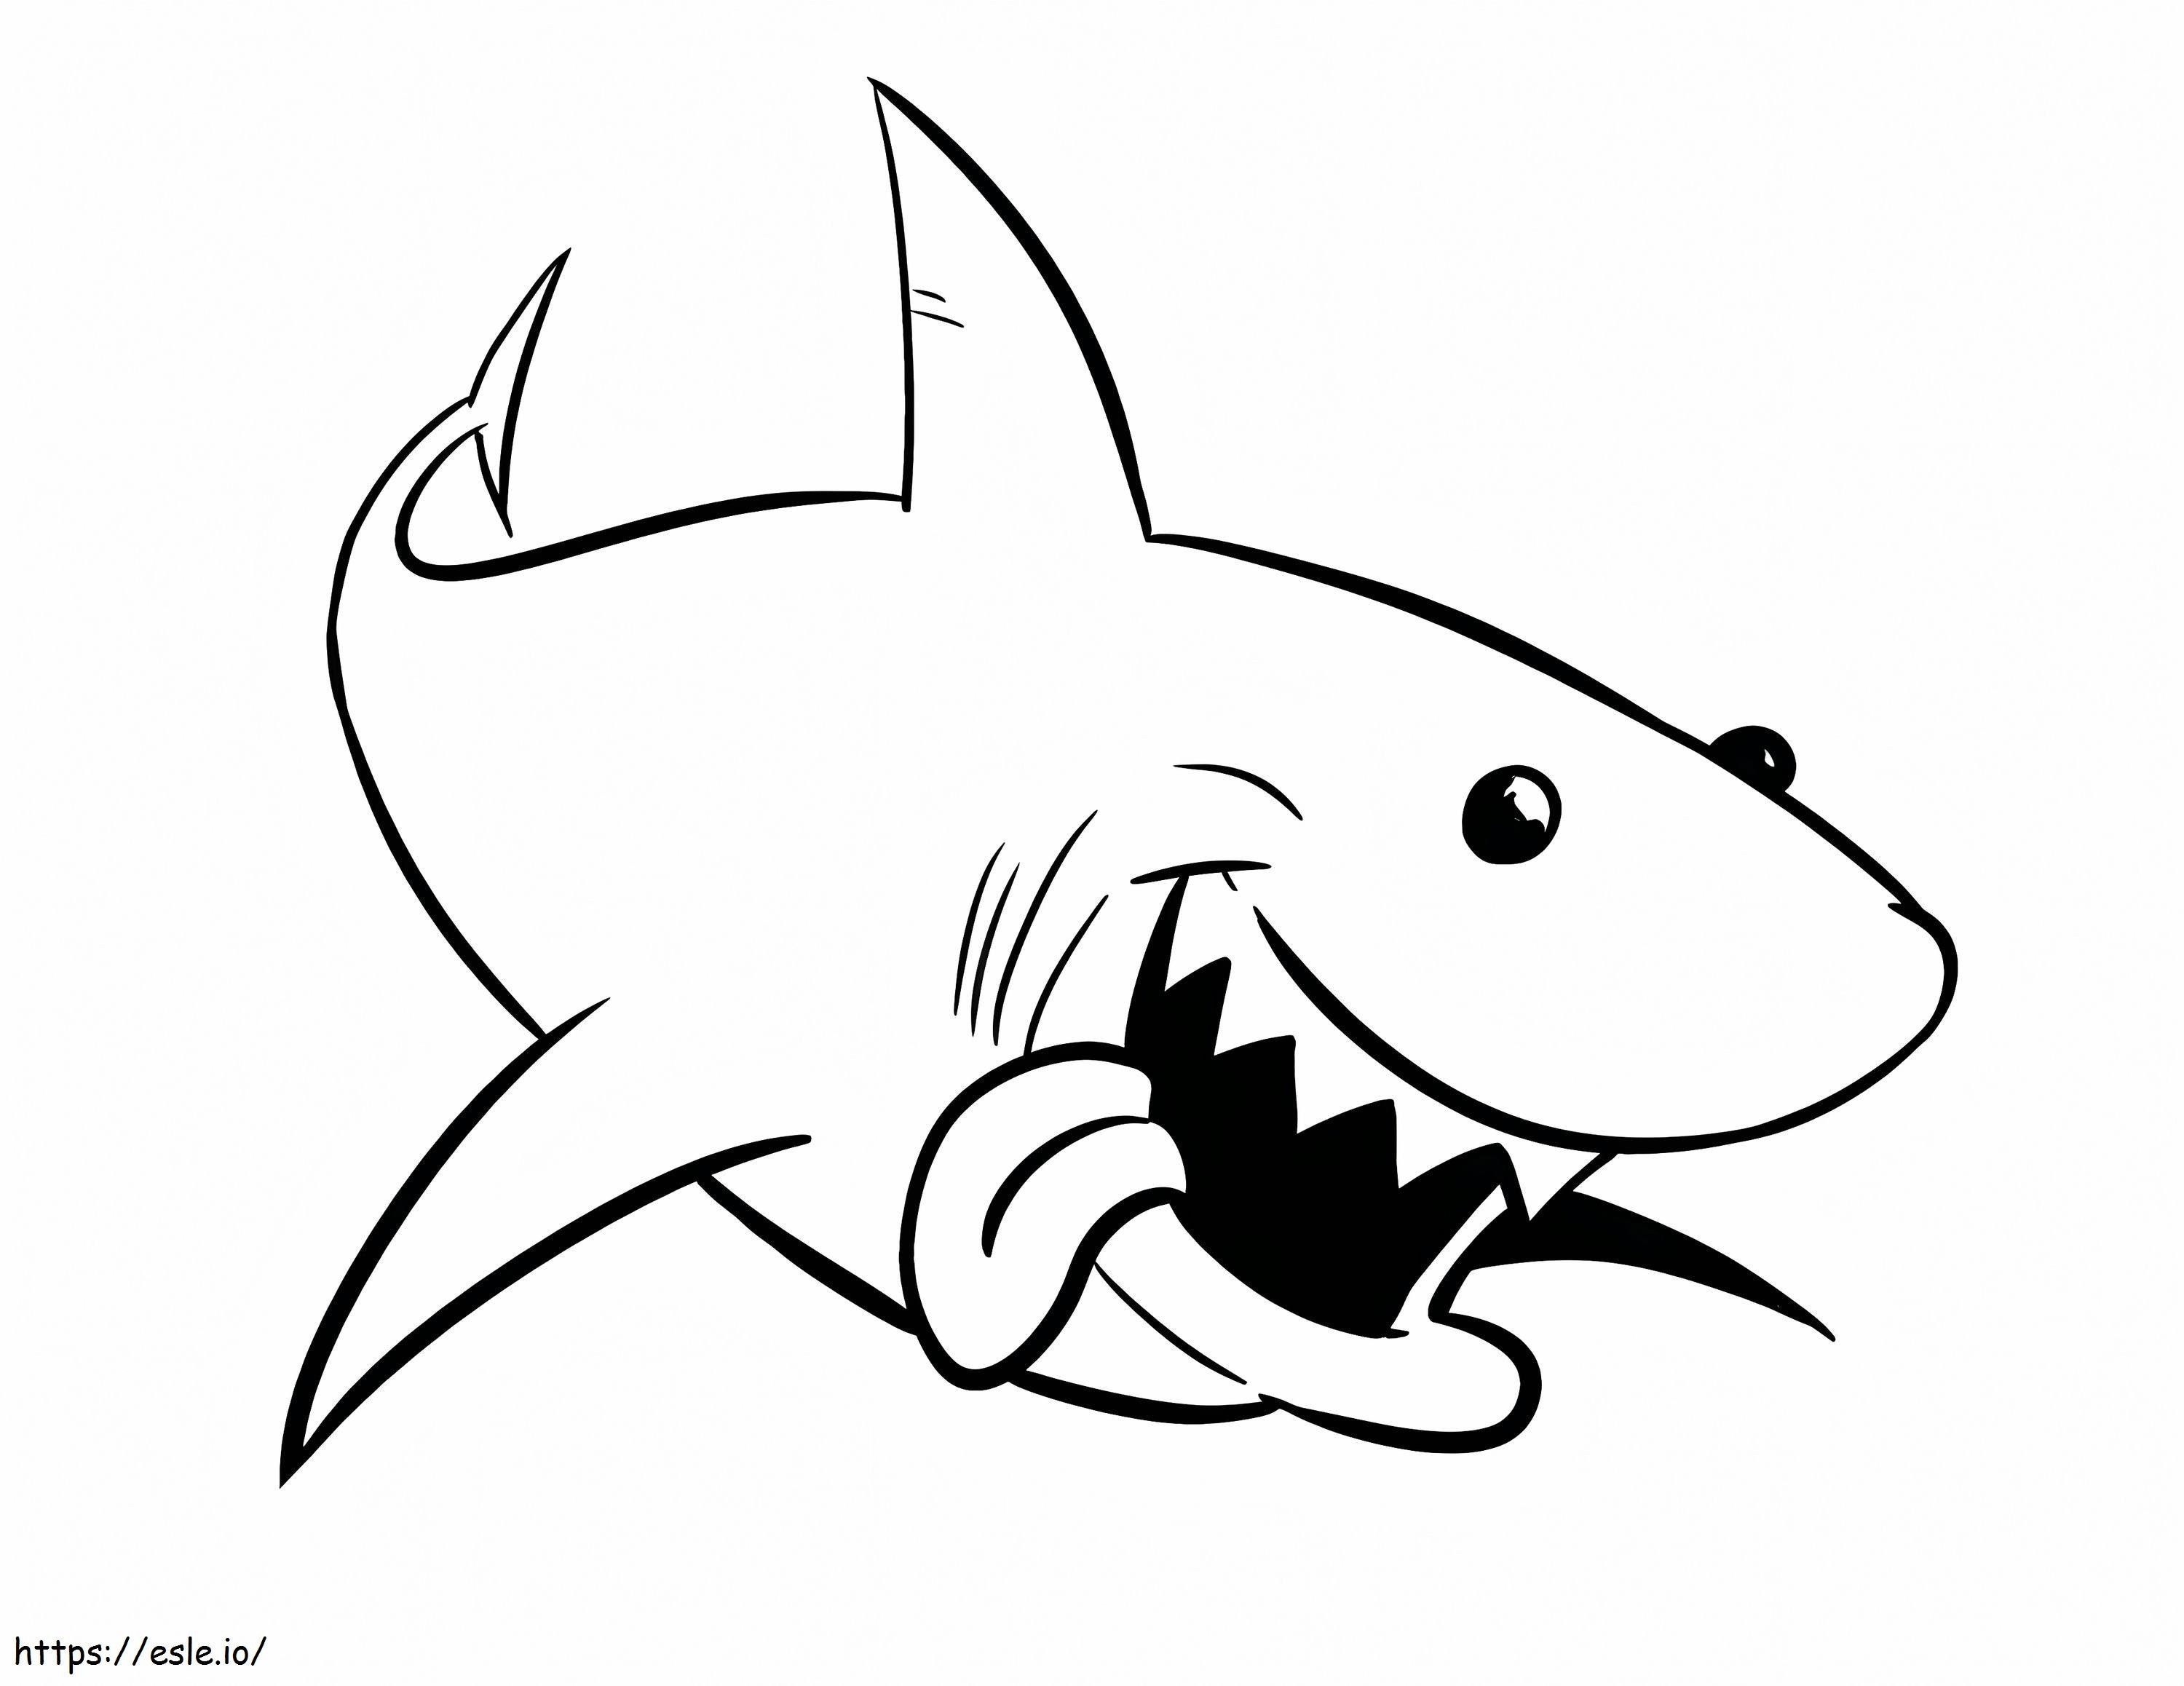 1541378982 Complete D792570 Tiburón Toro Gran Tiburón Blanco Nuevo Dibujo De Tiburón Toro Para Colorear Tiburón Toro Antiguo Imágenes De Tiburón Toro Para Colorear para colorear